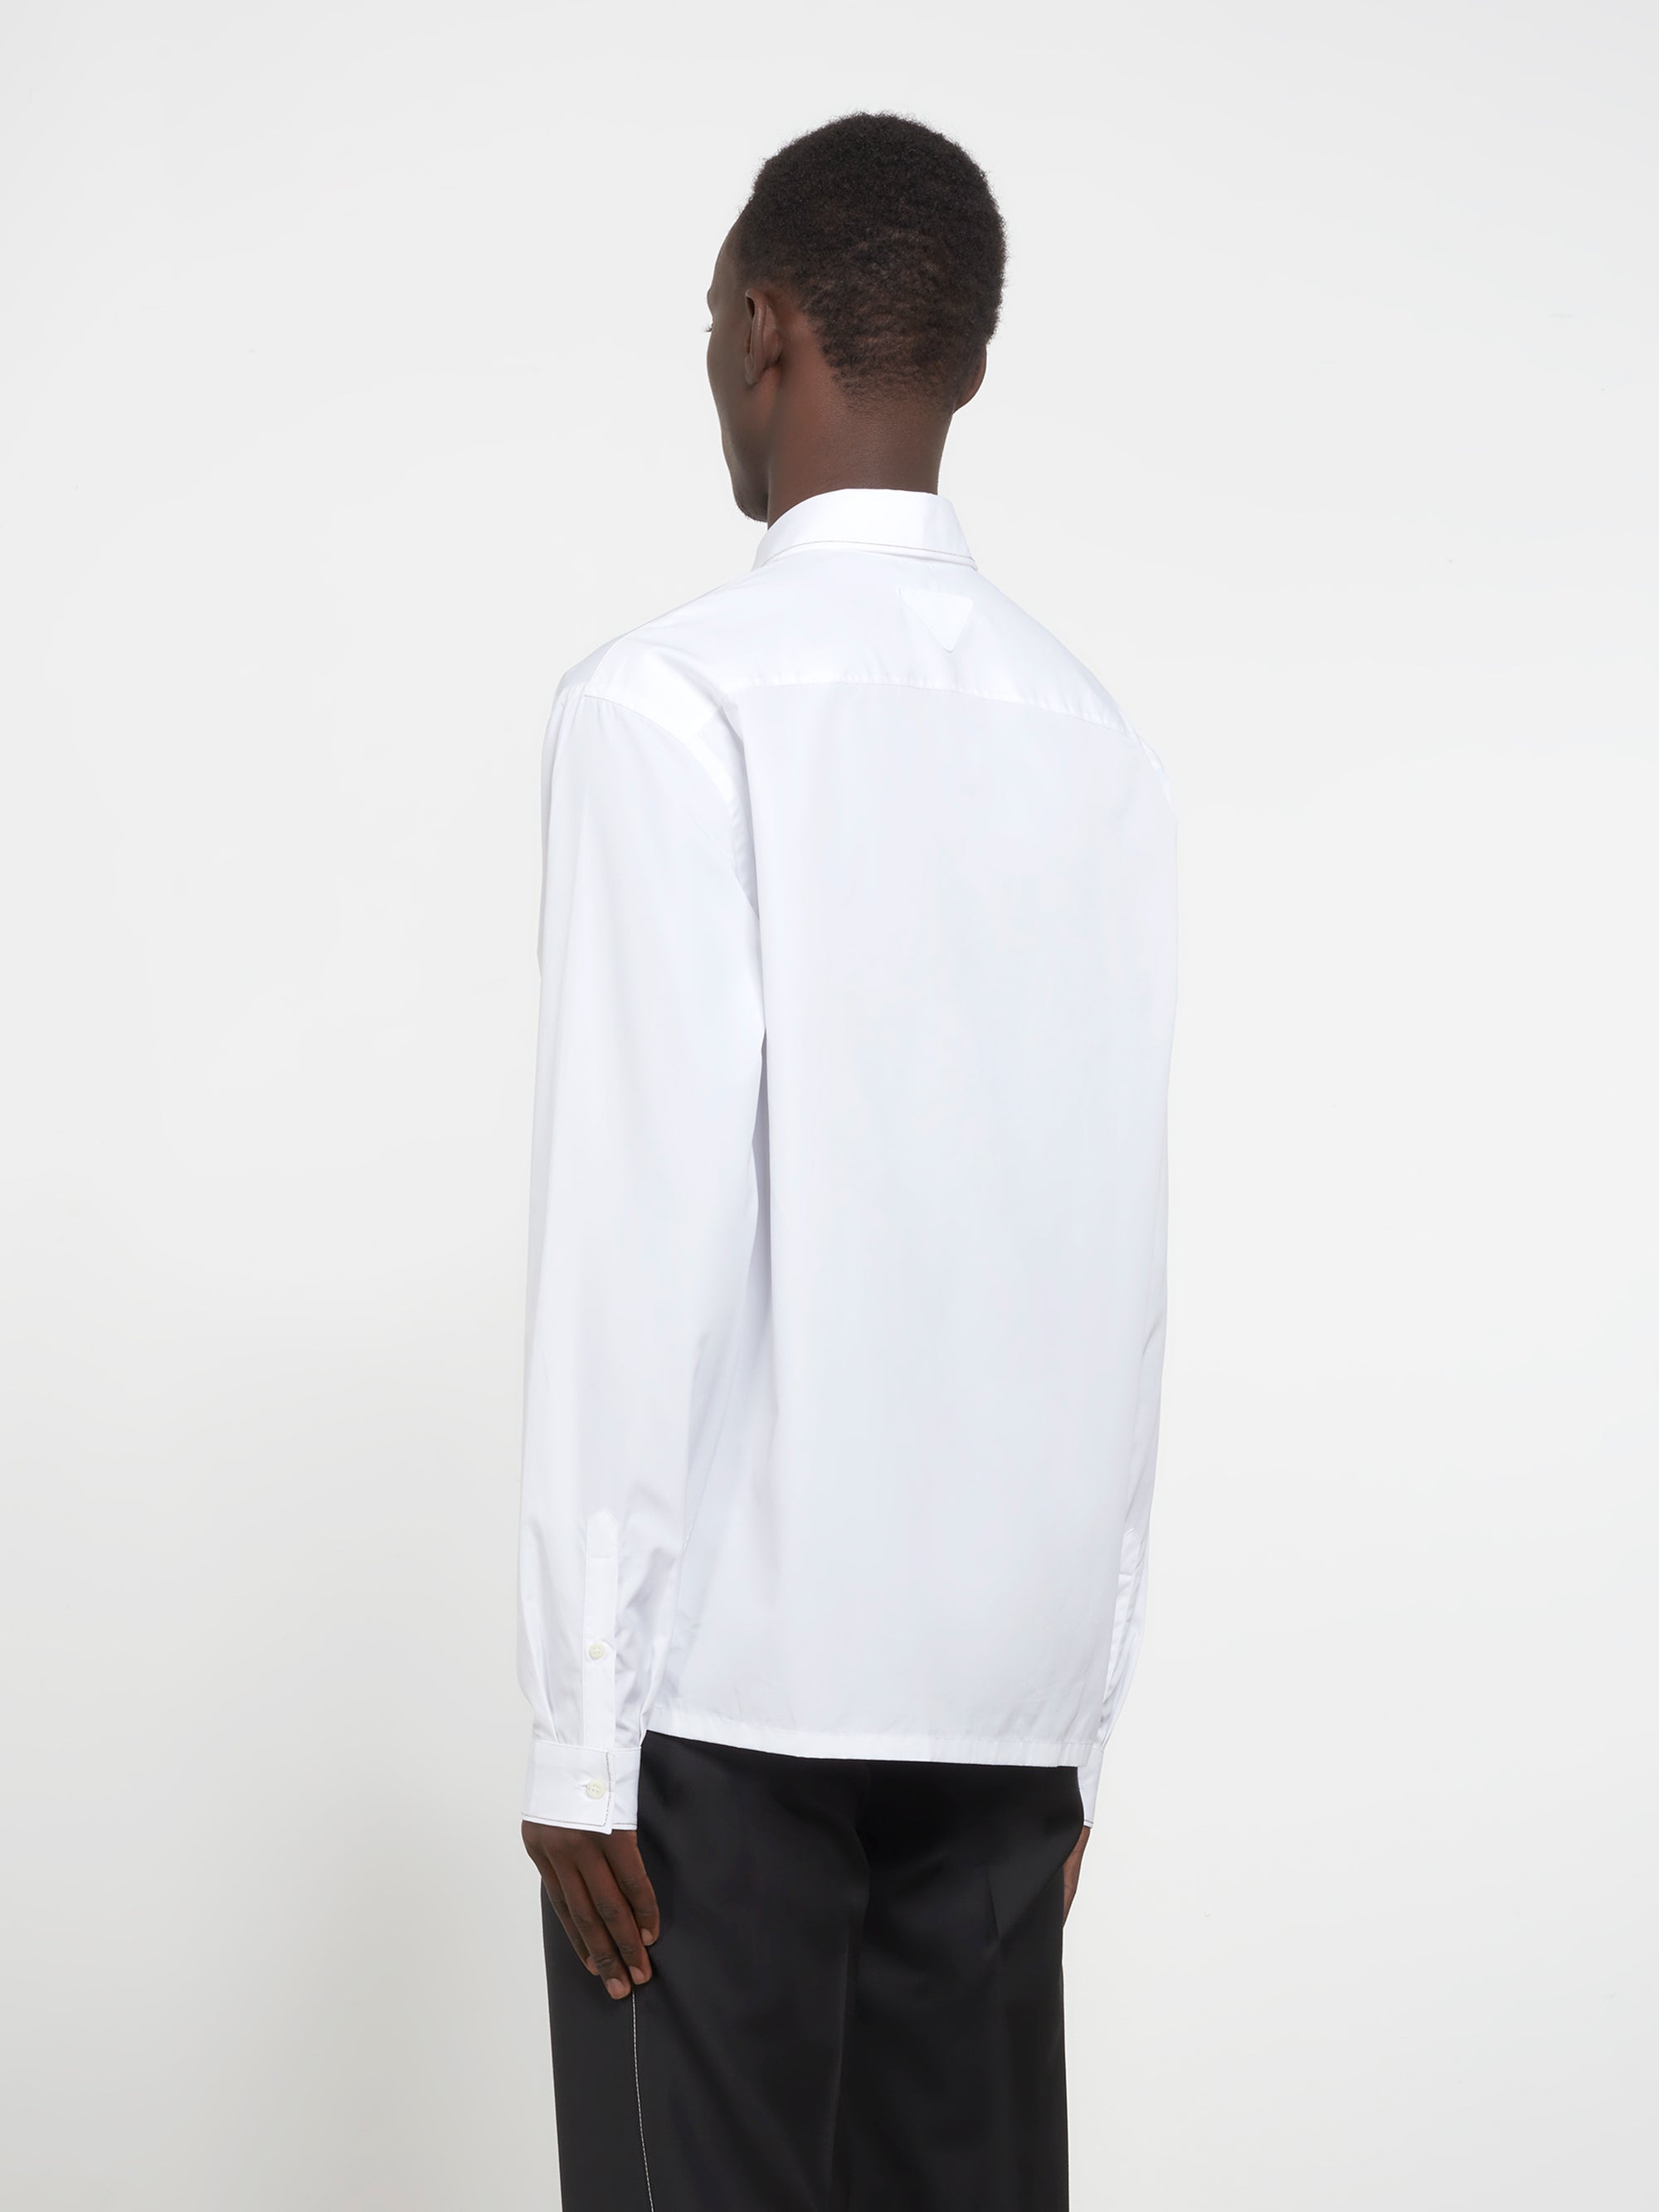 Prada - Men’s Cotton Shirt - (White) view 3